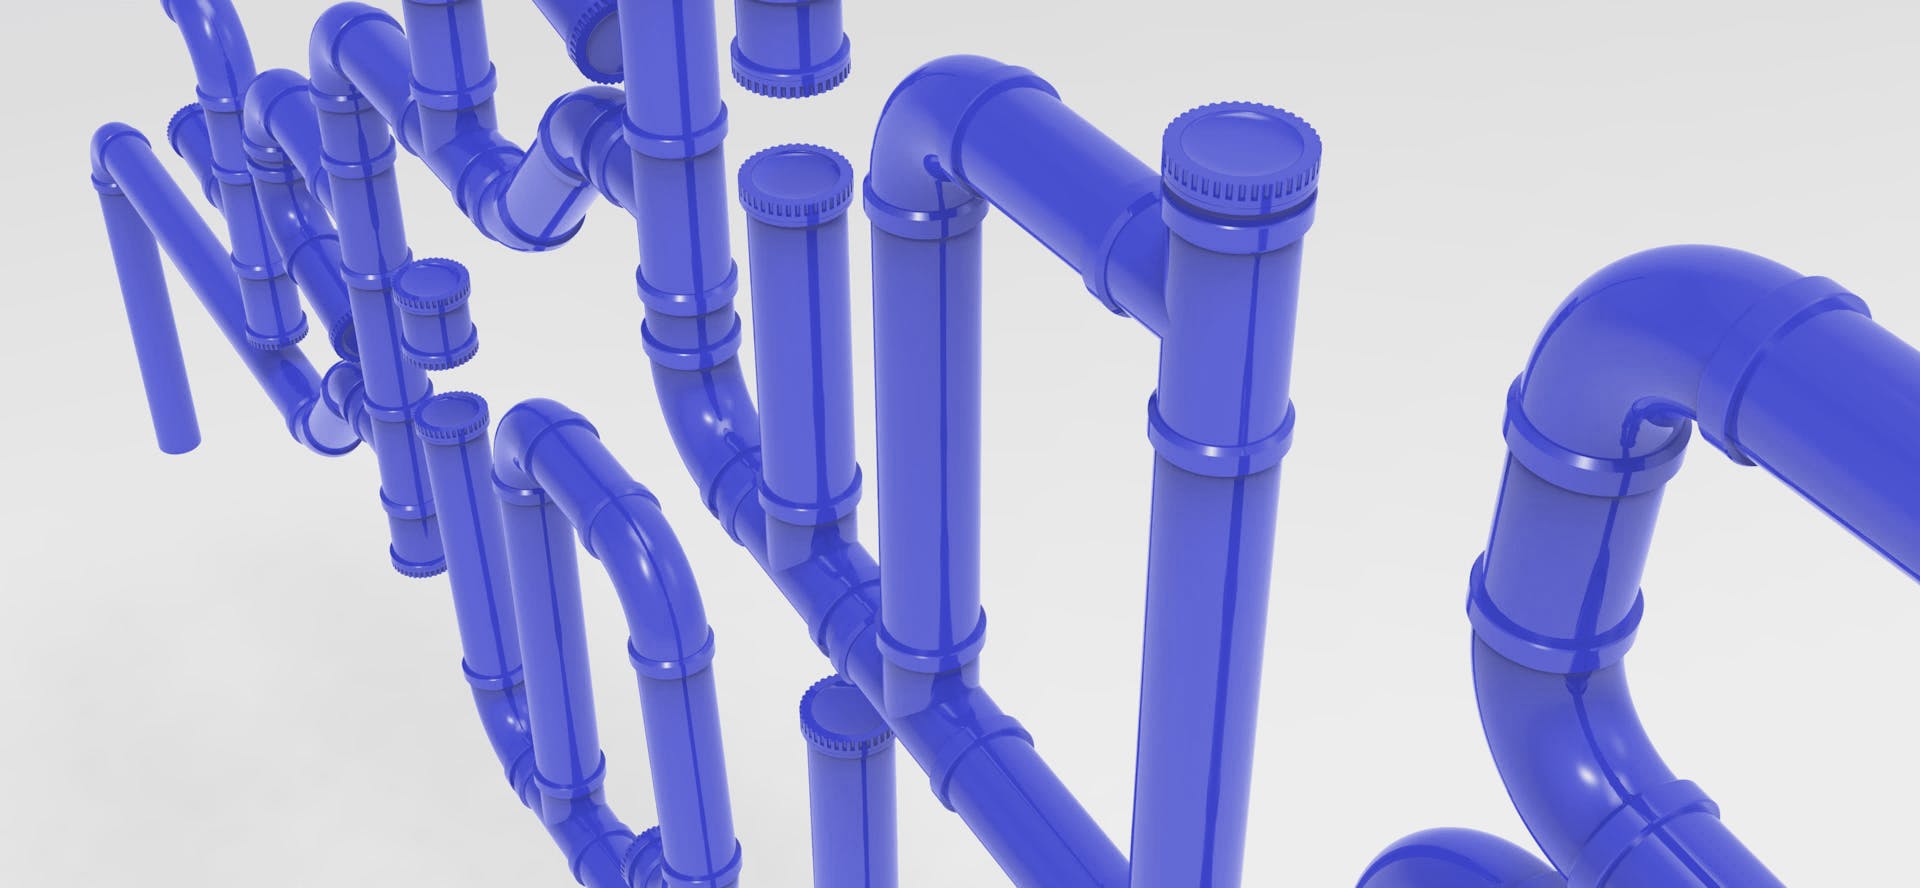 Modélisation 3D du récupérateur d'eau de Valeuriad, conçu par l'agence de design Studio Katra.